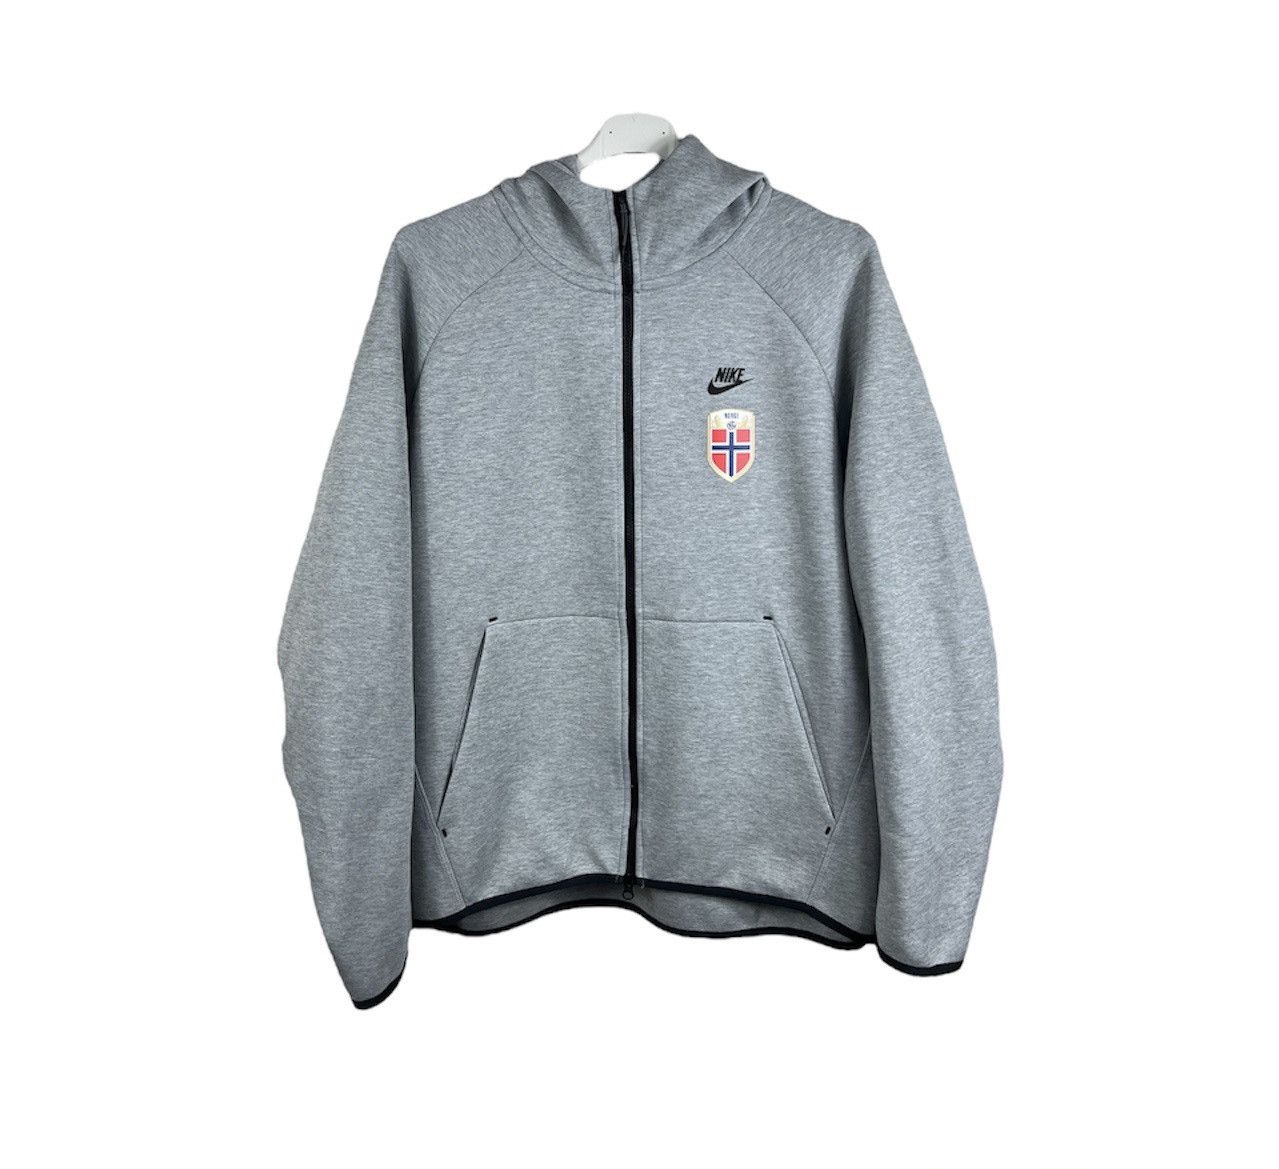 Nike Nike rare tech fleece hoodie y2k norway norge national team | Grailed